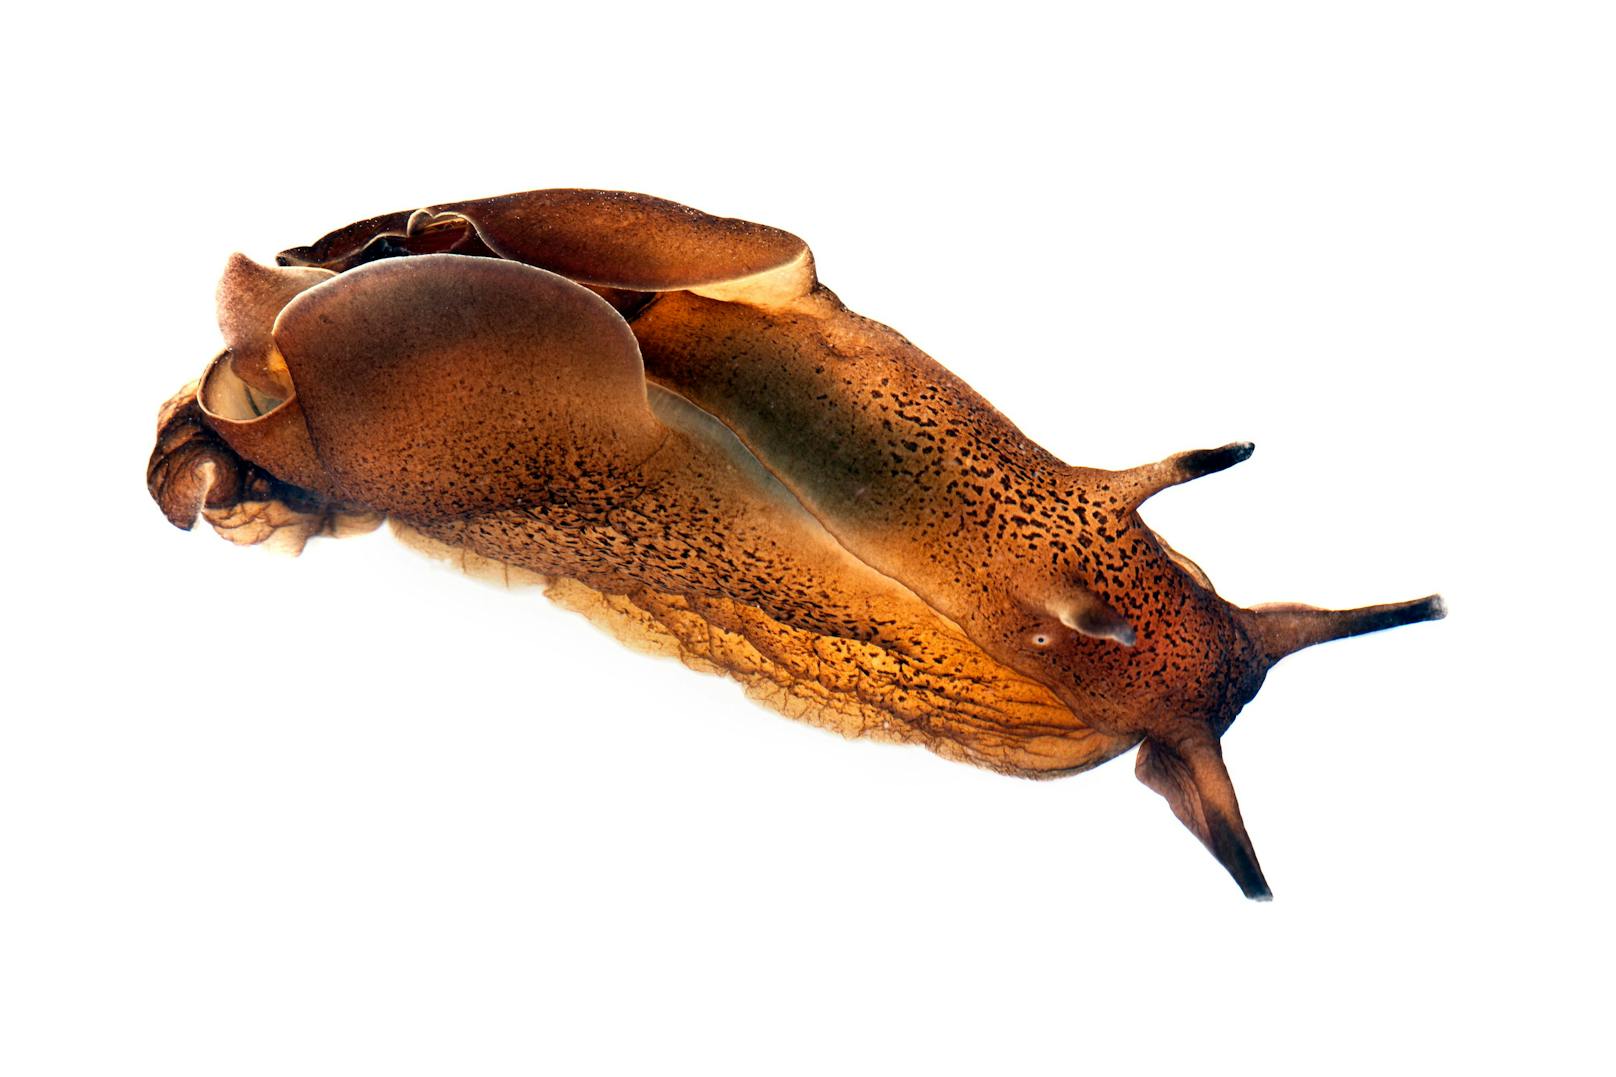 Unauffällig und meistens in den Farben der Umgebung schweben die "Gemeinen Seehasen" durch das Meer. 